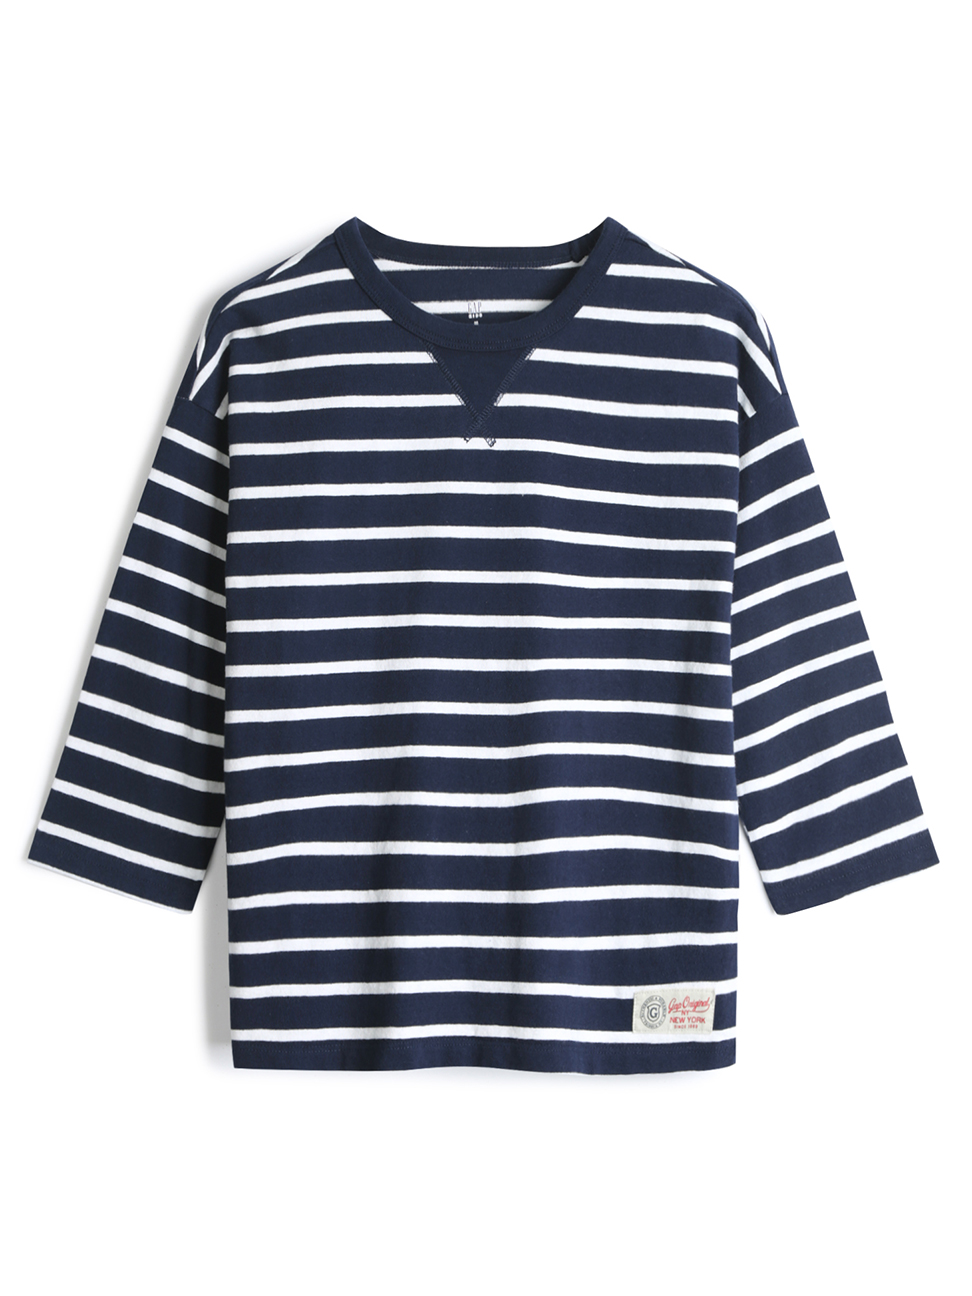 男童裝|棉質舒適圓領長袖T恤-海軍藍白條紋